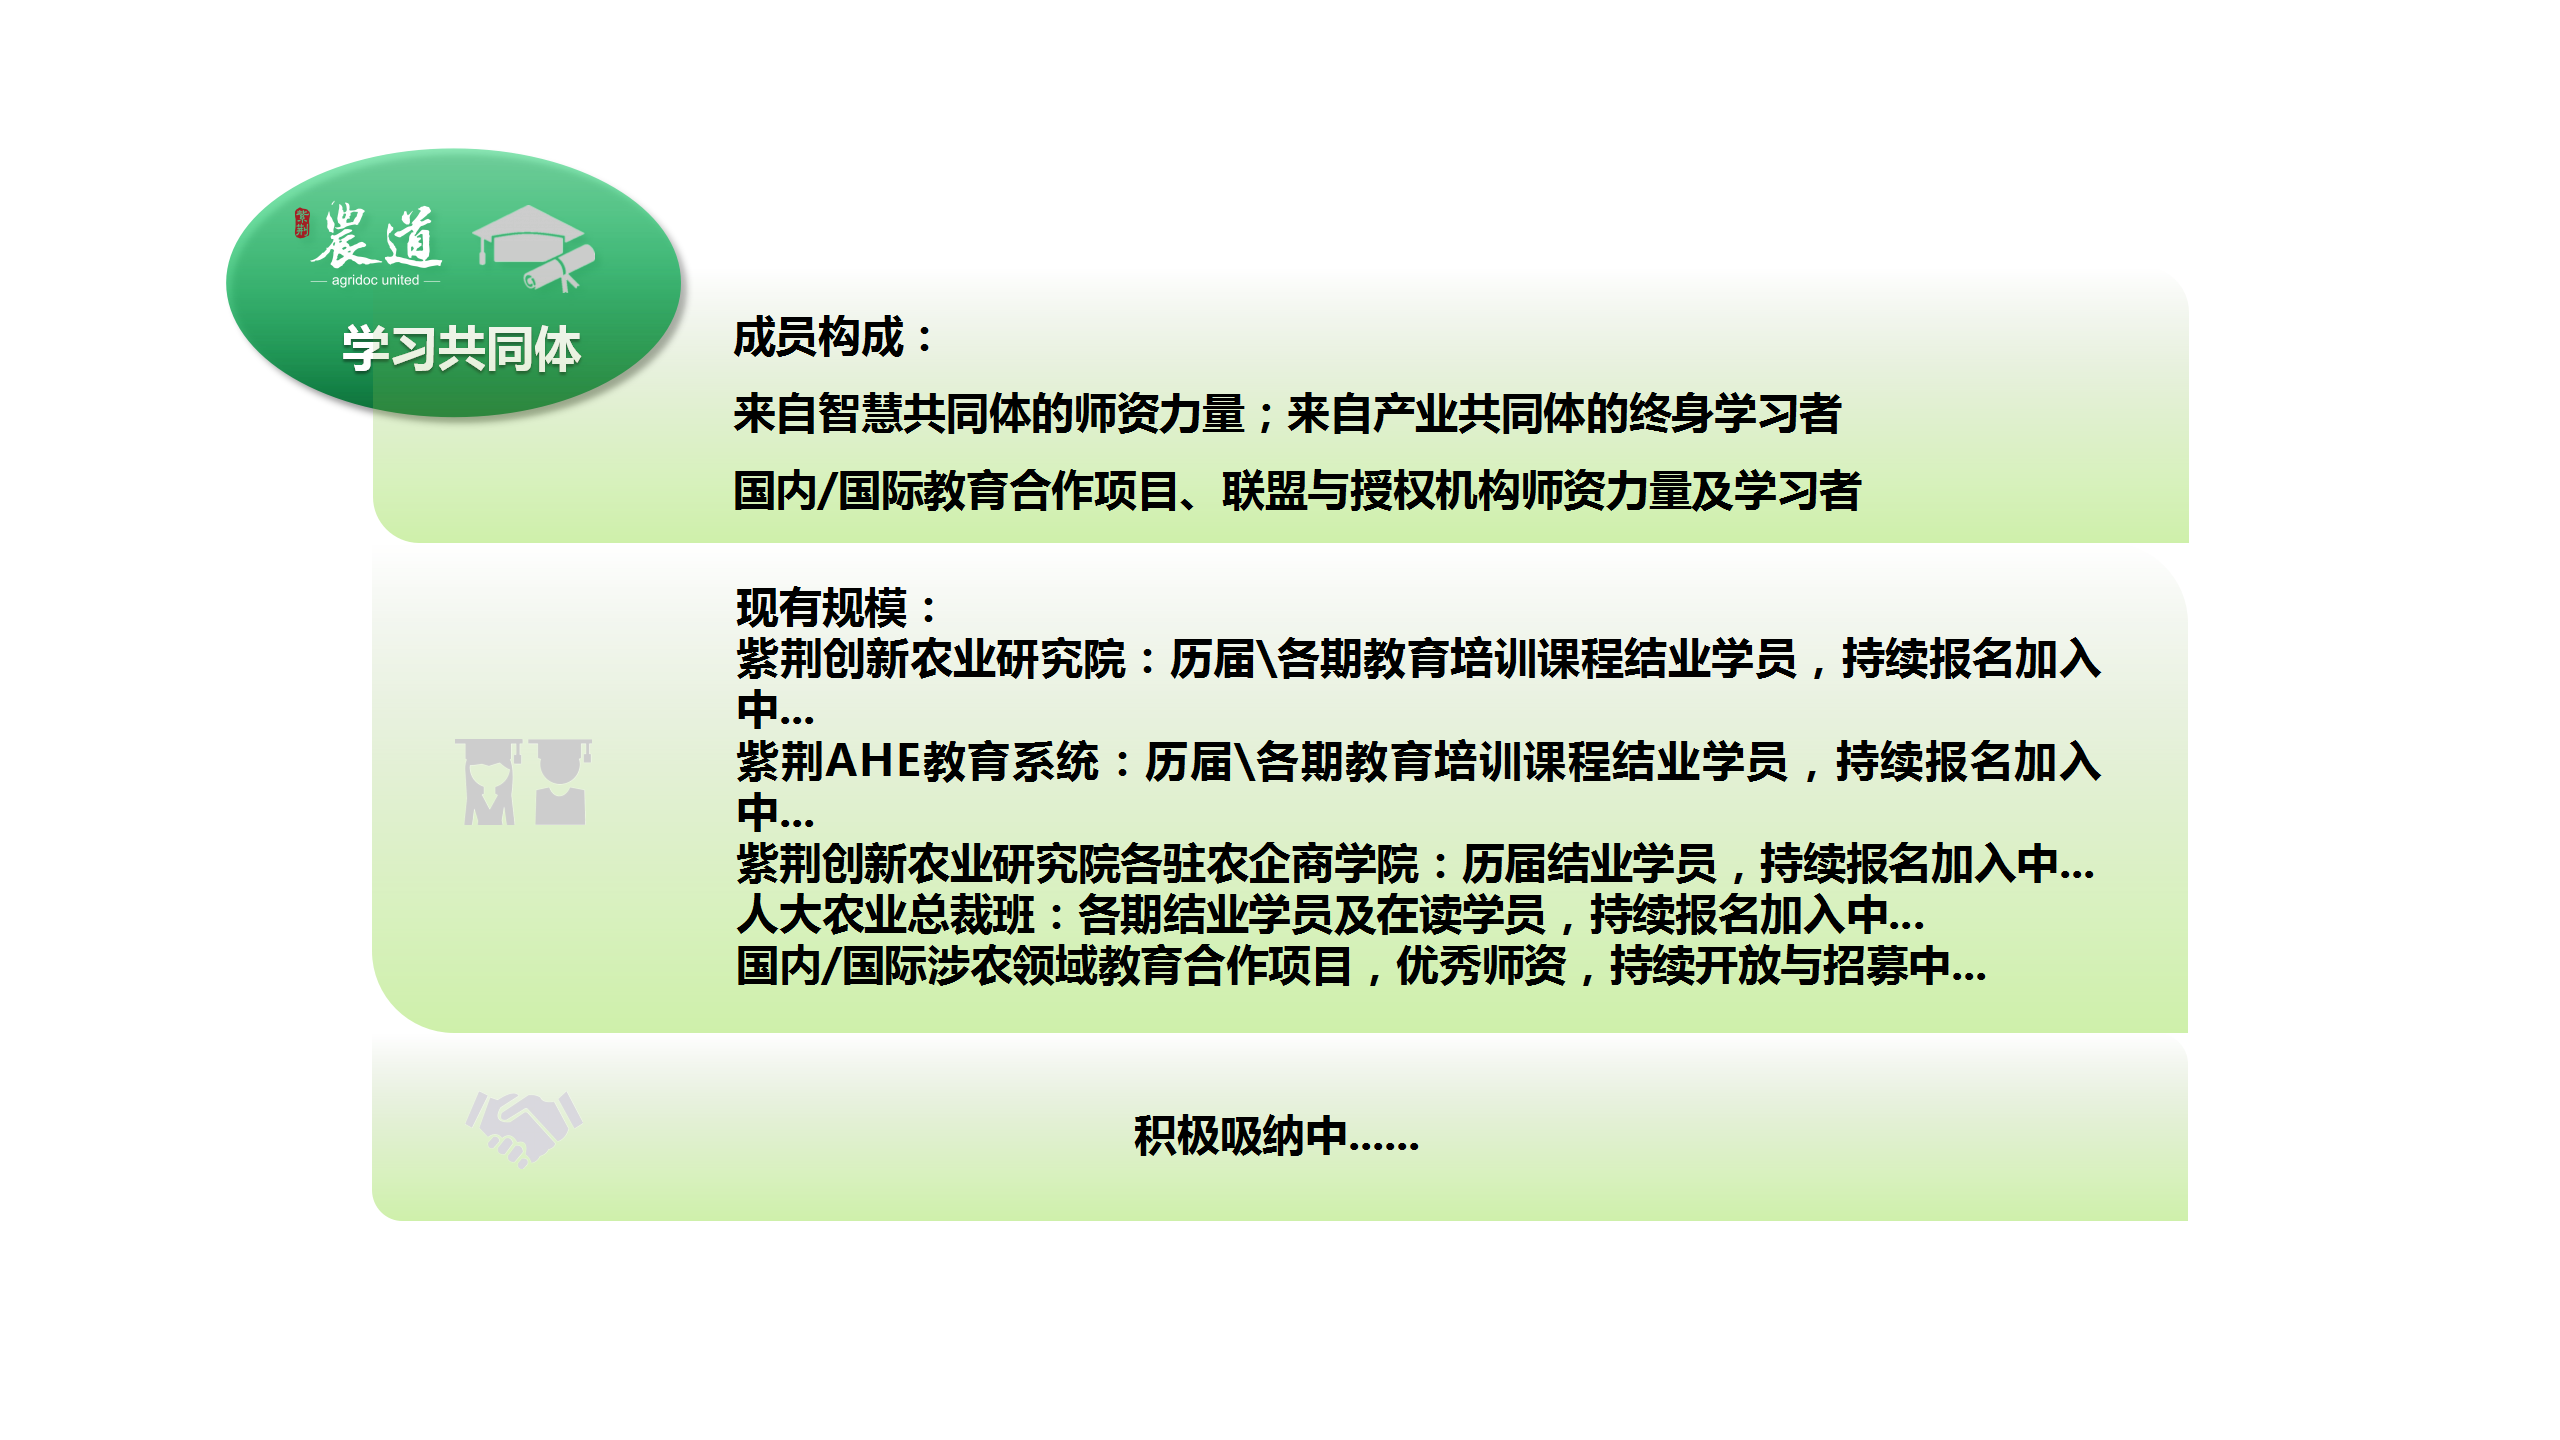 紫荆农道宣传资料配图设计参照（20201006）_06.png